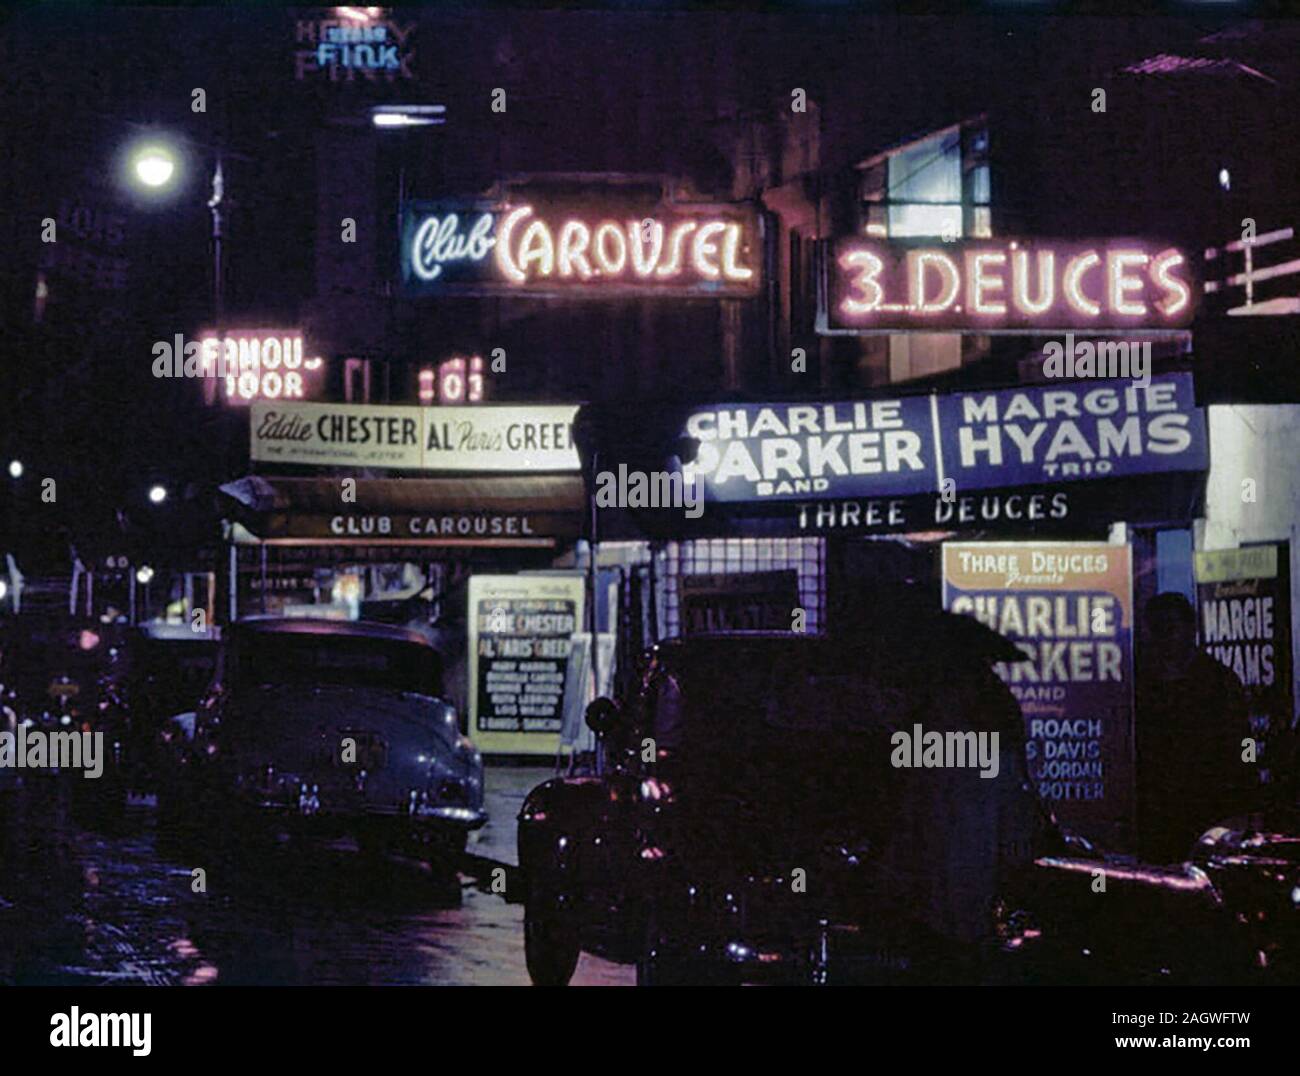 La 52e Rue, New York, N.Y., ca. Juillet 1948 Banque D'Images